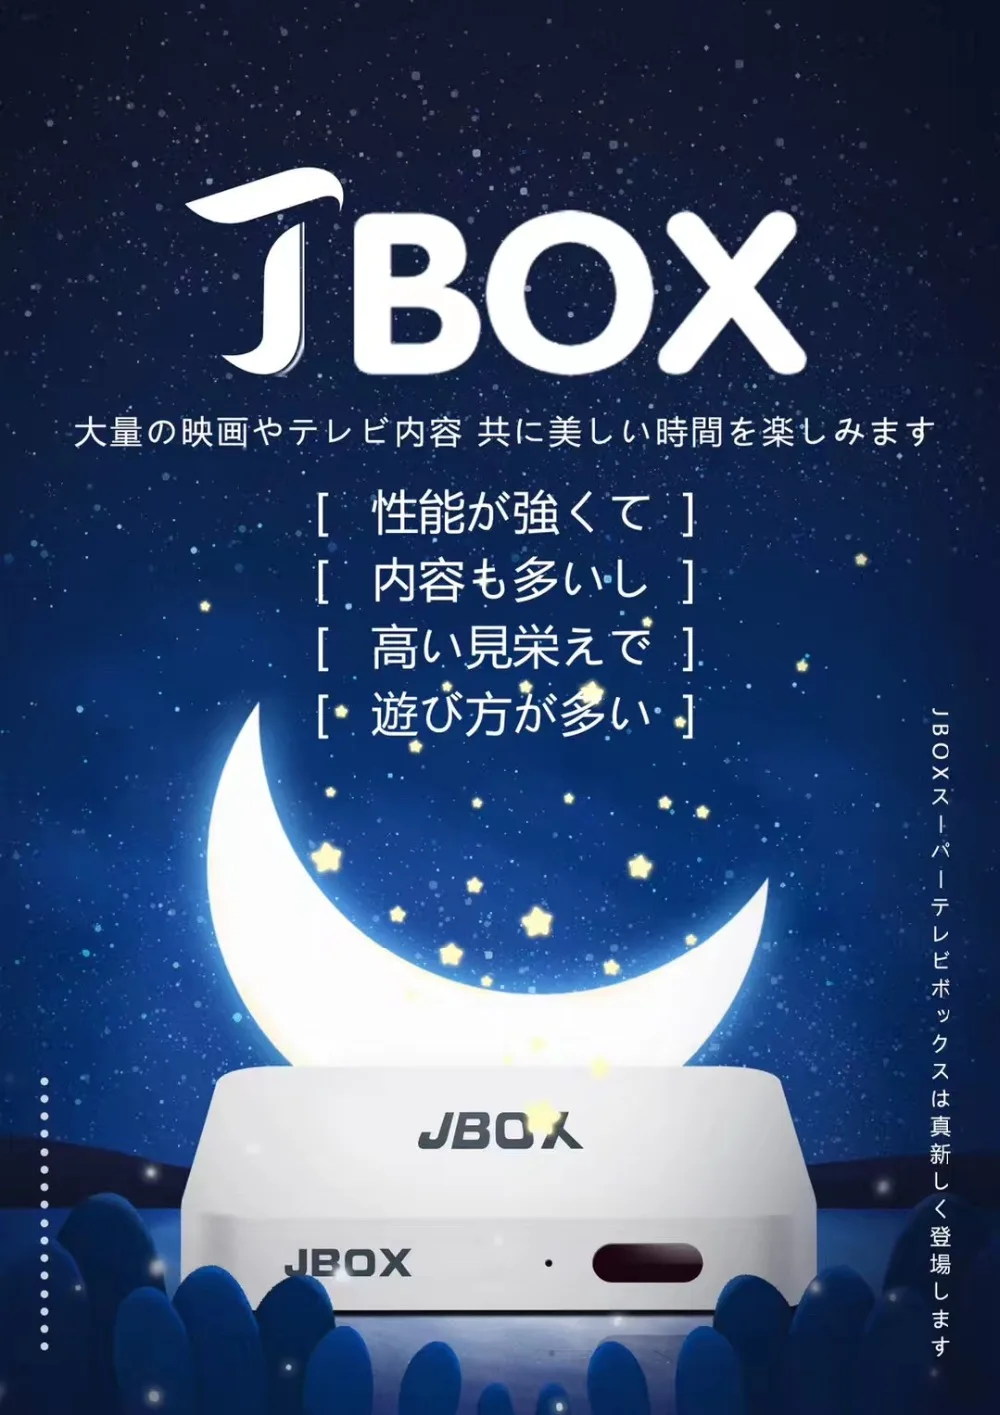 Разблокируйте Tech Ubox PRO JBOX японская версия новая версия HDMI 2,0 ТВ приставка Android 7,0 2 ГБ+ 32 ГБ JP ТВ канал воспроизведения